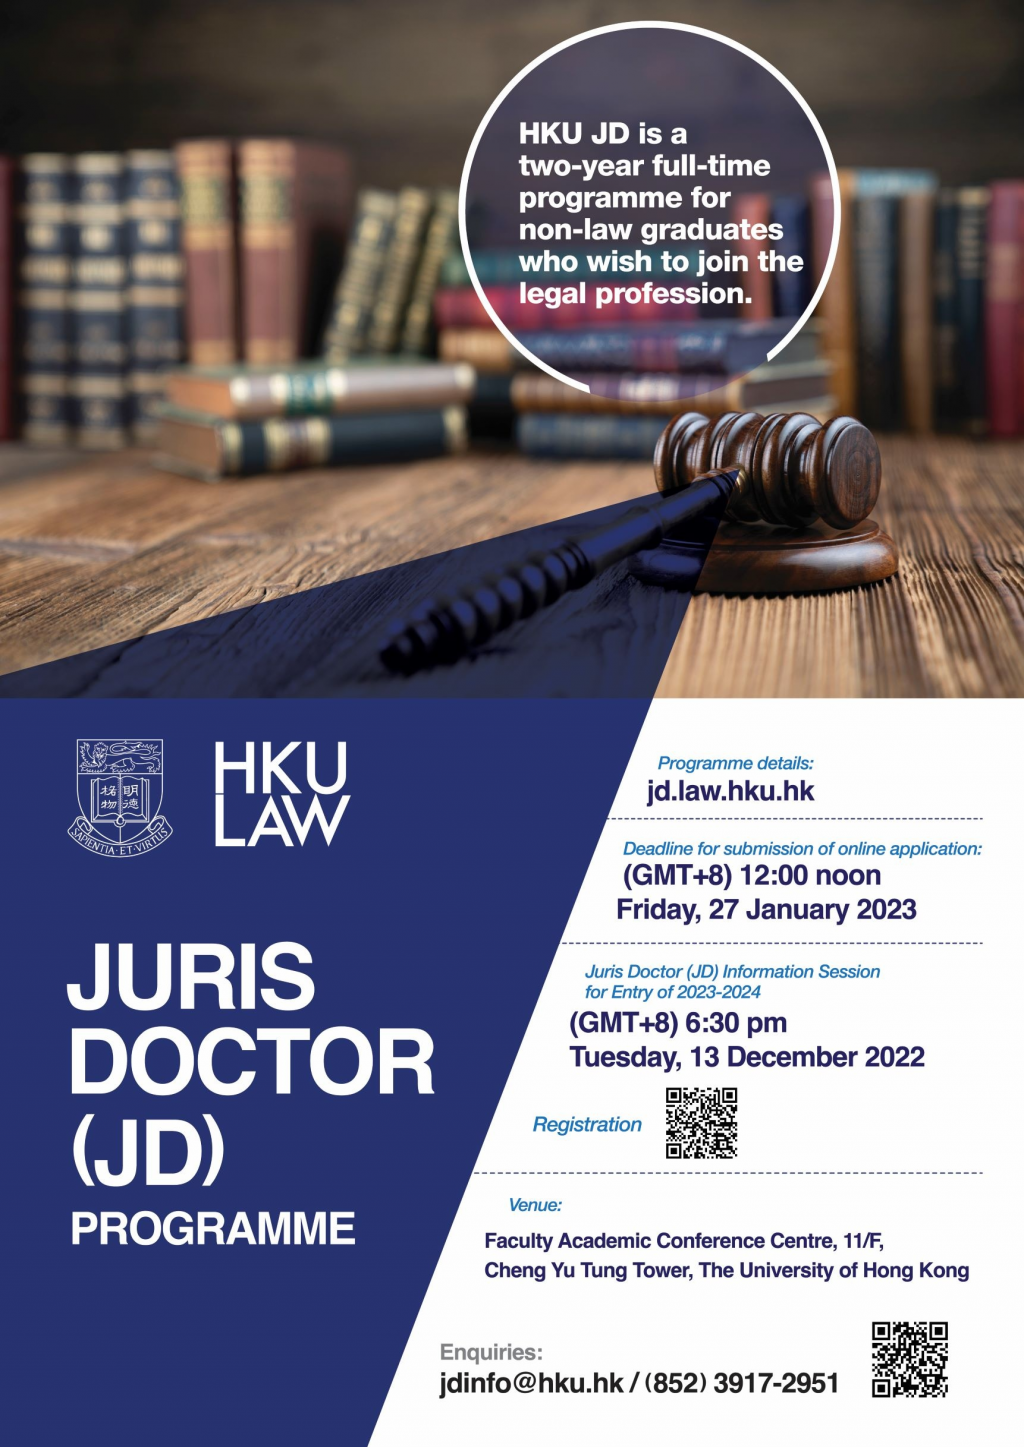 HKU Juris Doctor Programme Information Session: 13 Dec 2022 l Application Deadline: 27 Jan 2023